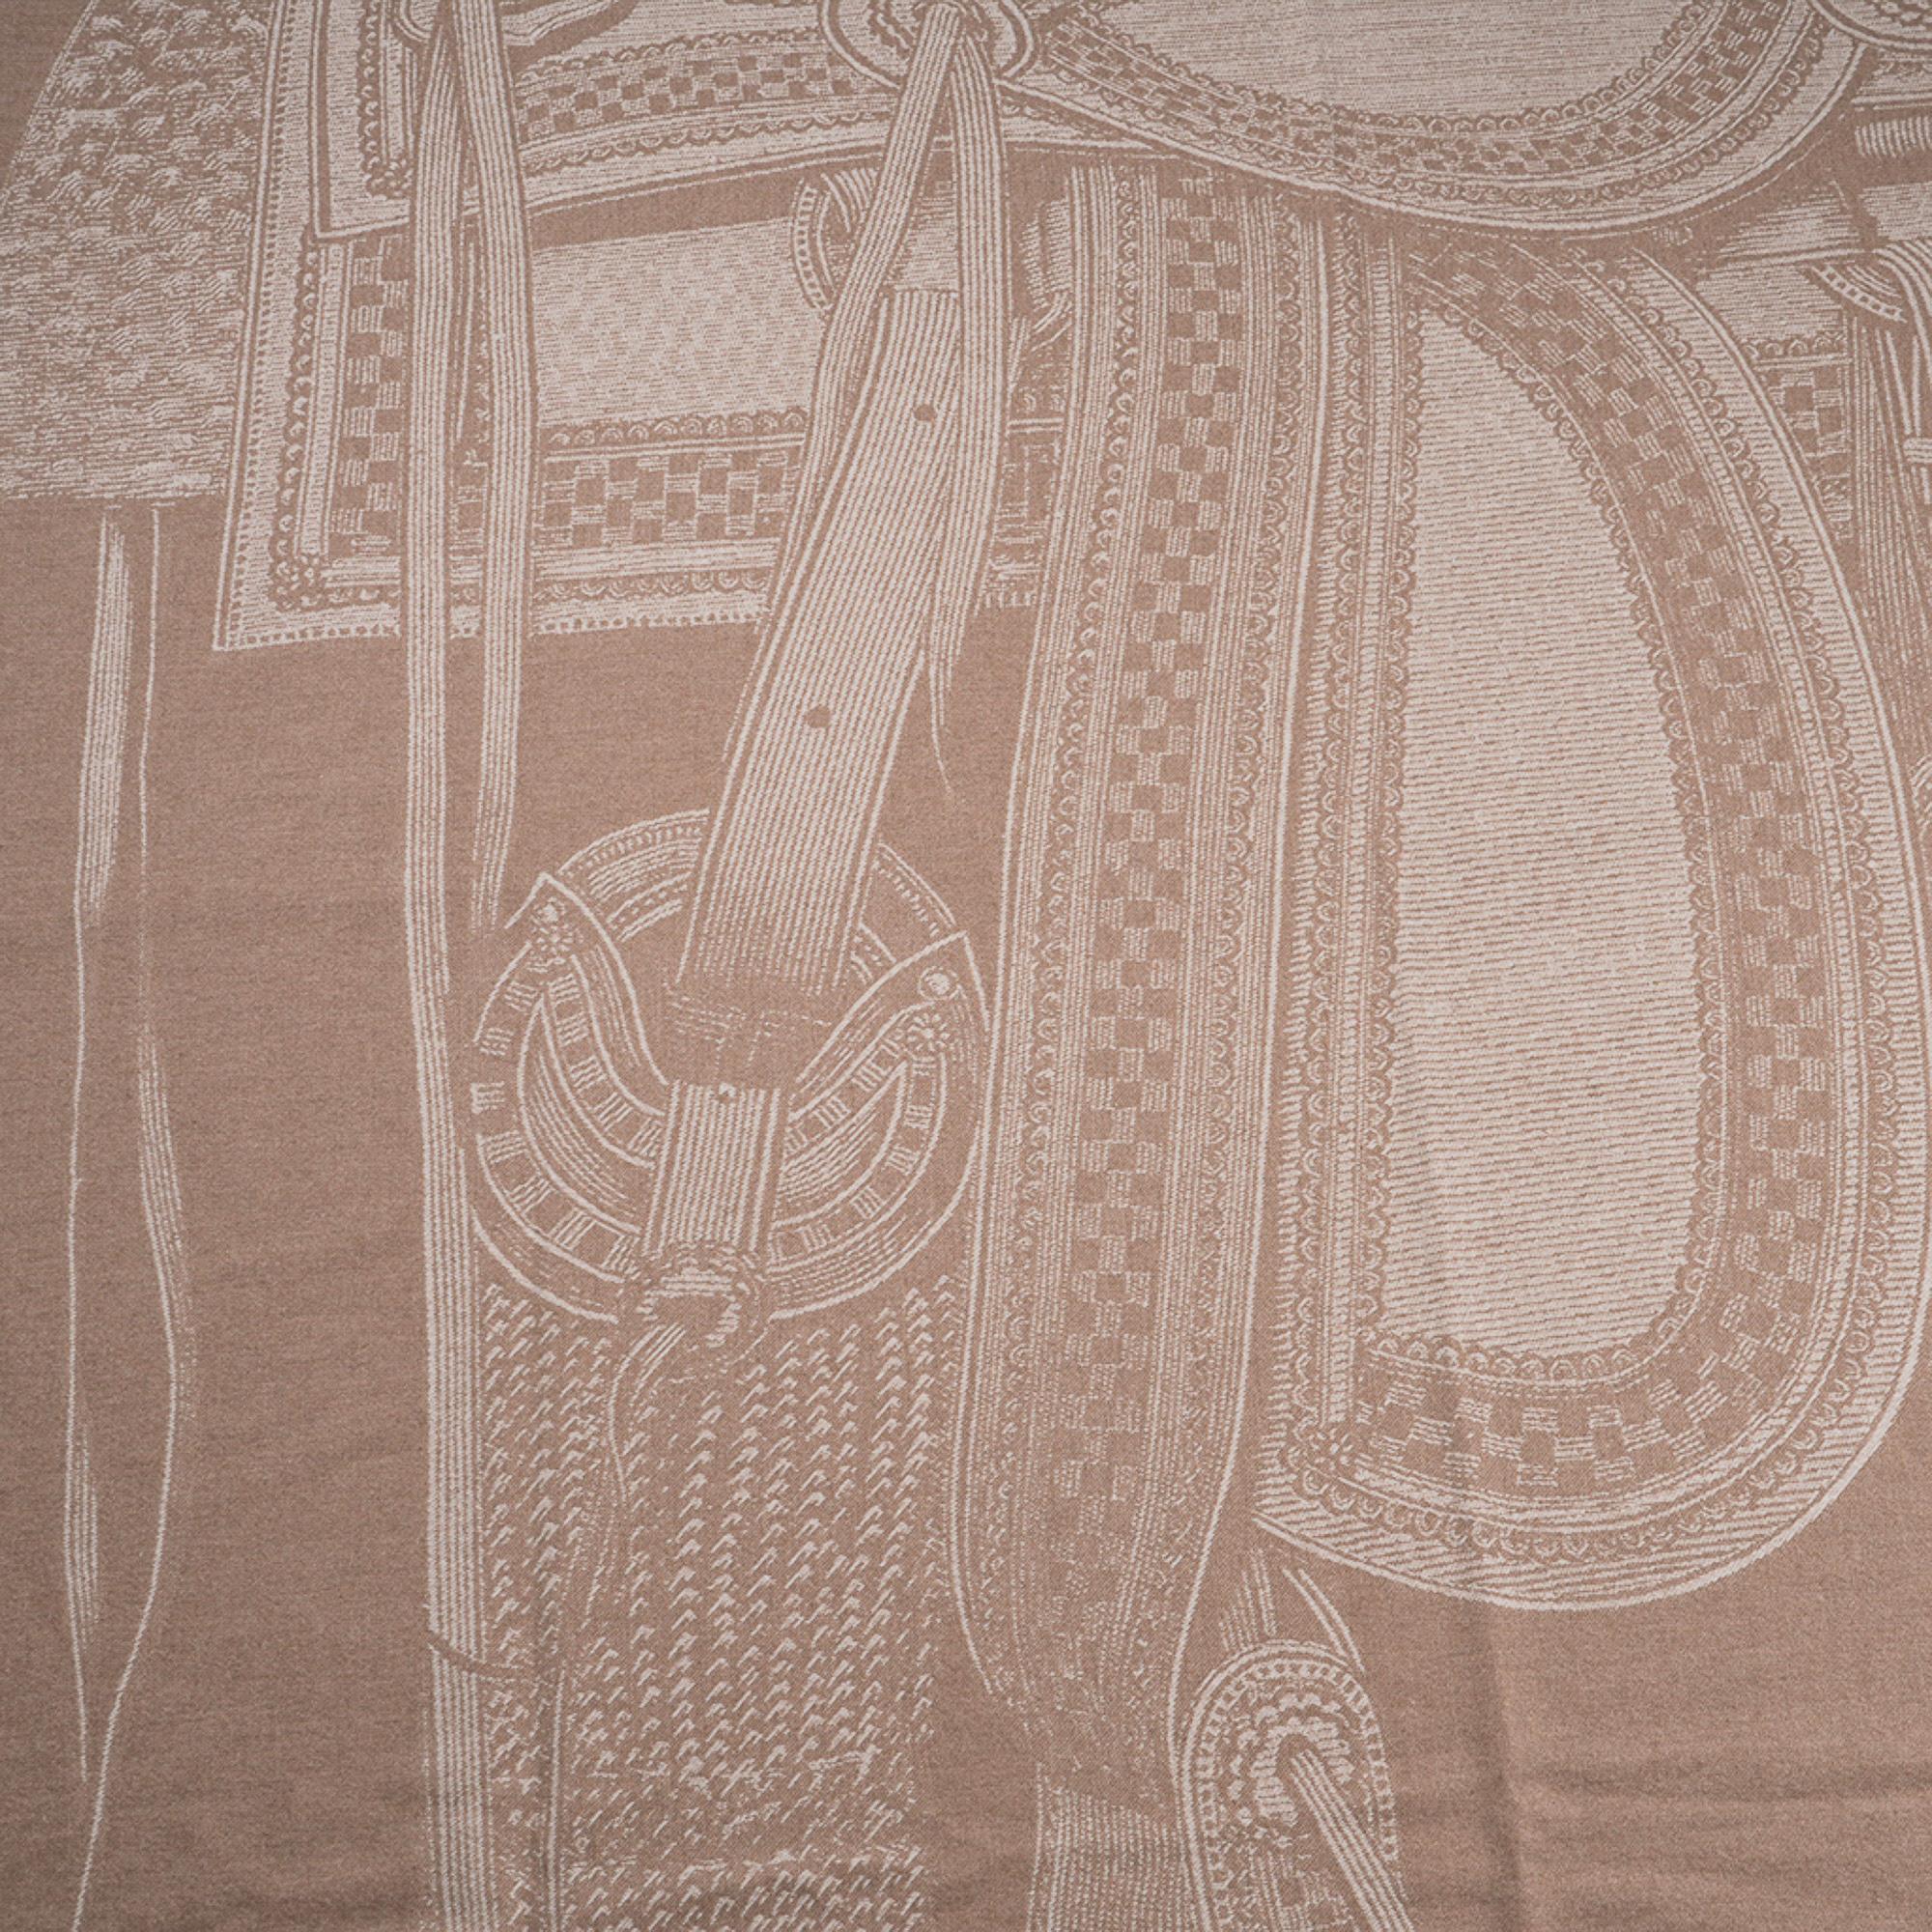 Mightychic bietet eine garantiert authentische Hermes Selle Far West Decke in der Farbe Sable.
Jacquard-gewebter Kaschmir mit Franseneinfassung ermöglicht es Ihnen, die exquisiten Bilddetails von jeder Seite zu sehen.
Dieser außergewöhnliche Sattel